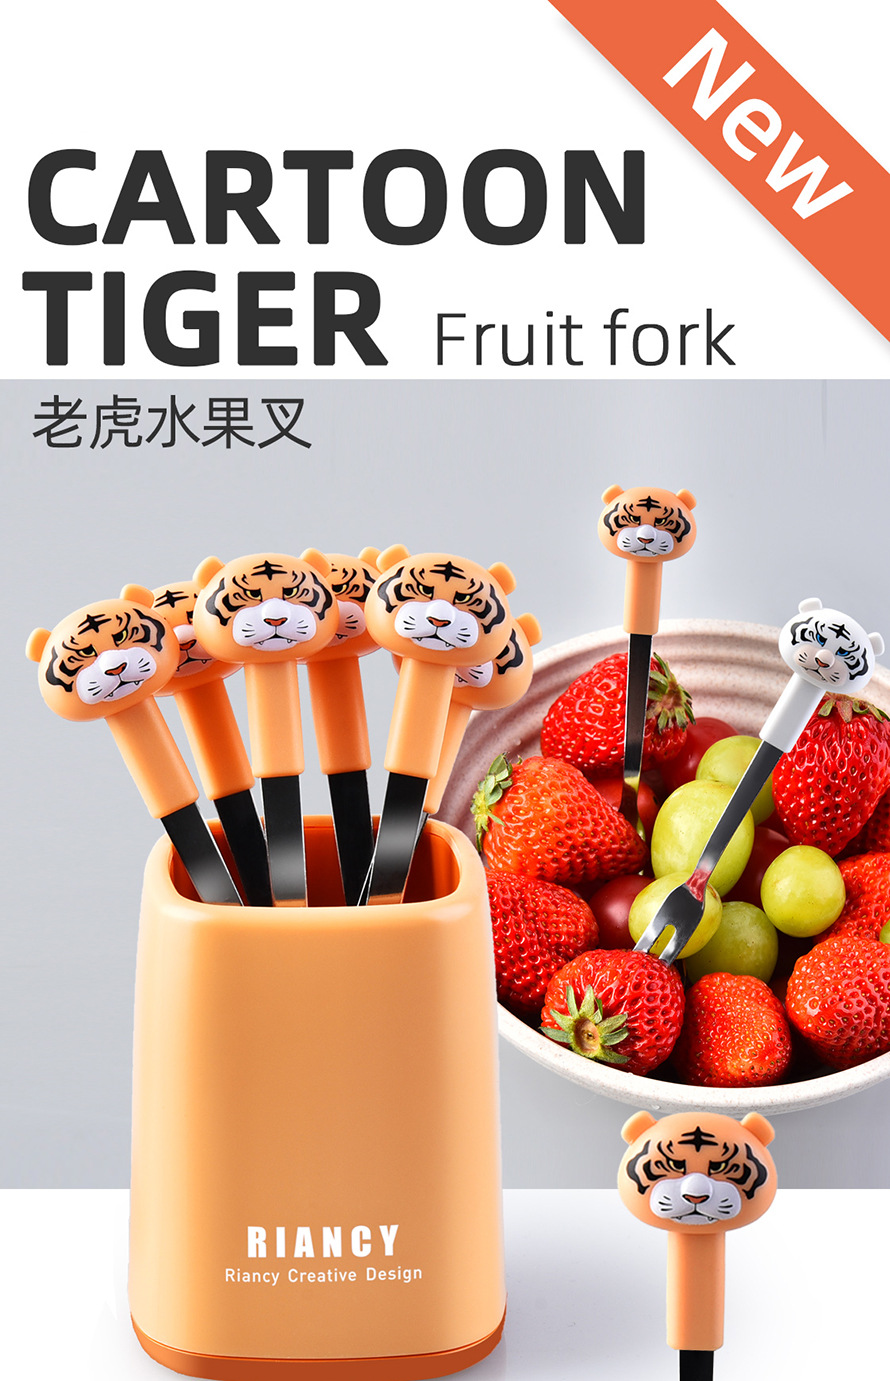 老虎頭造型水果叉 不鏽鋼甜品蛋糕小叉子 時尚老虎水果叉 6支裝0